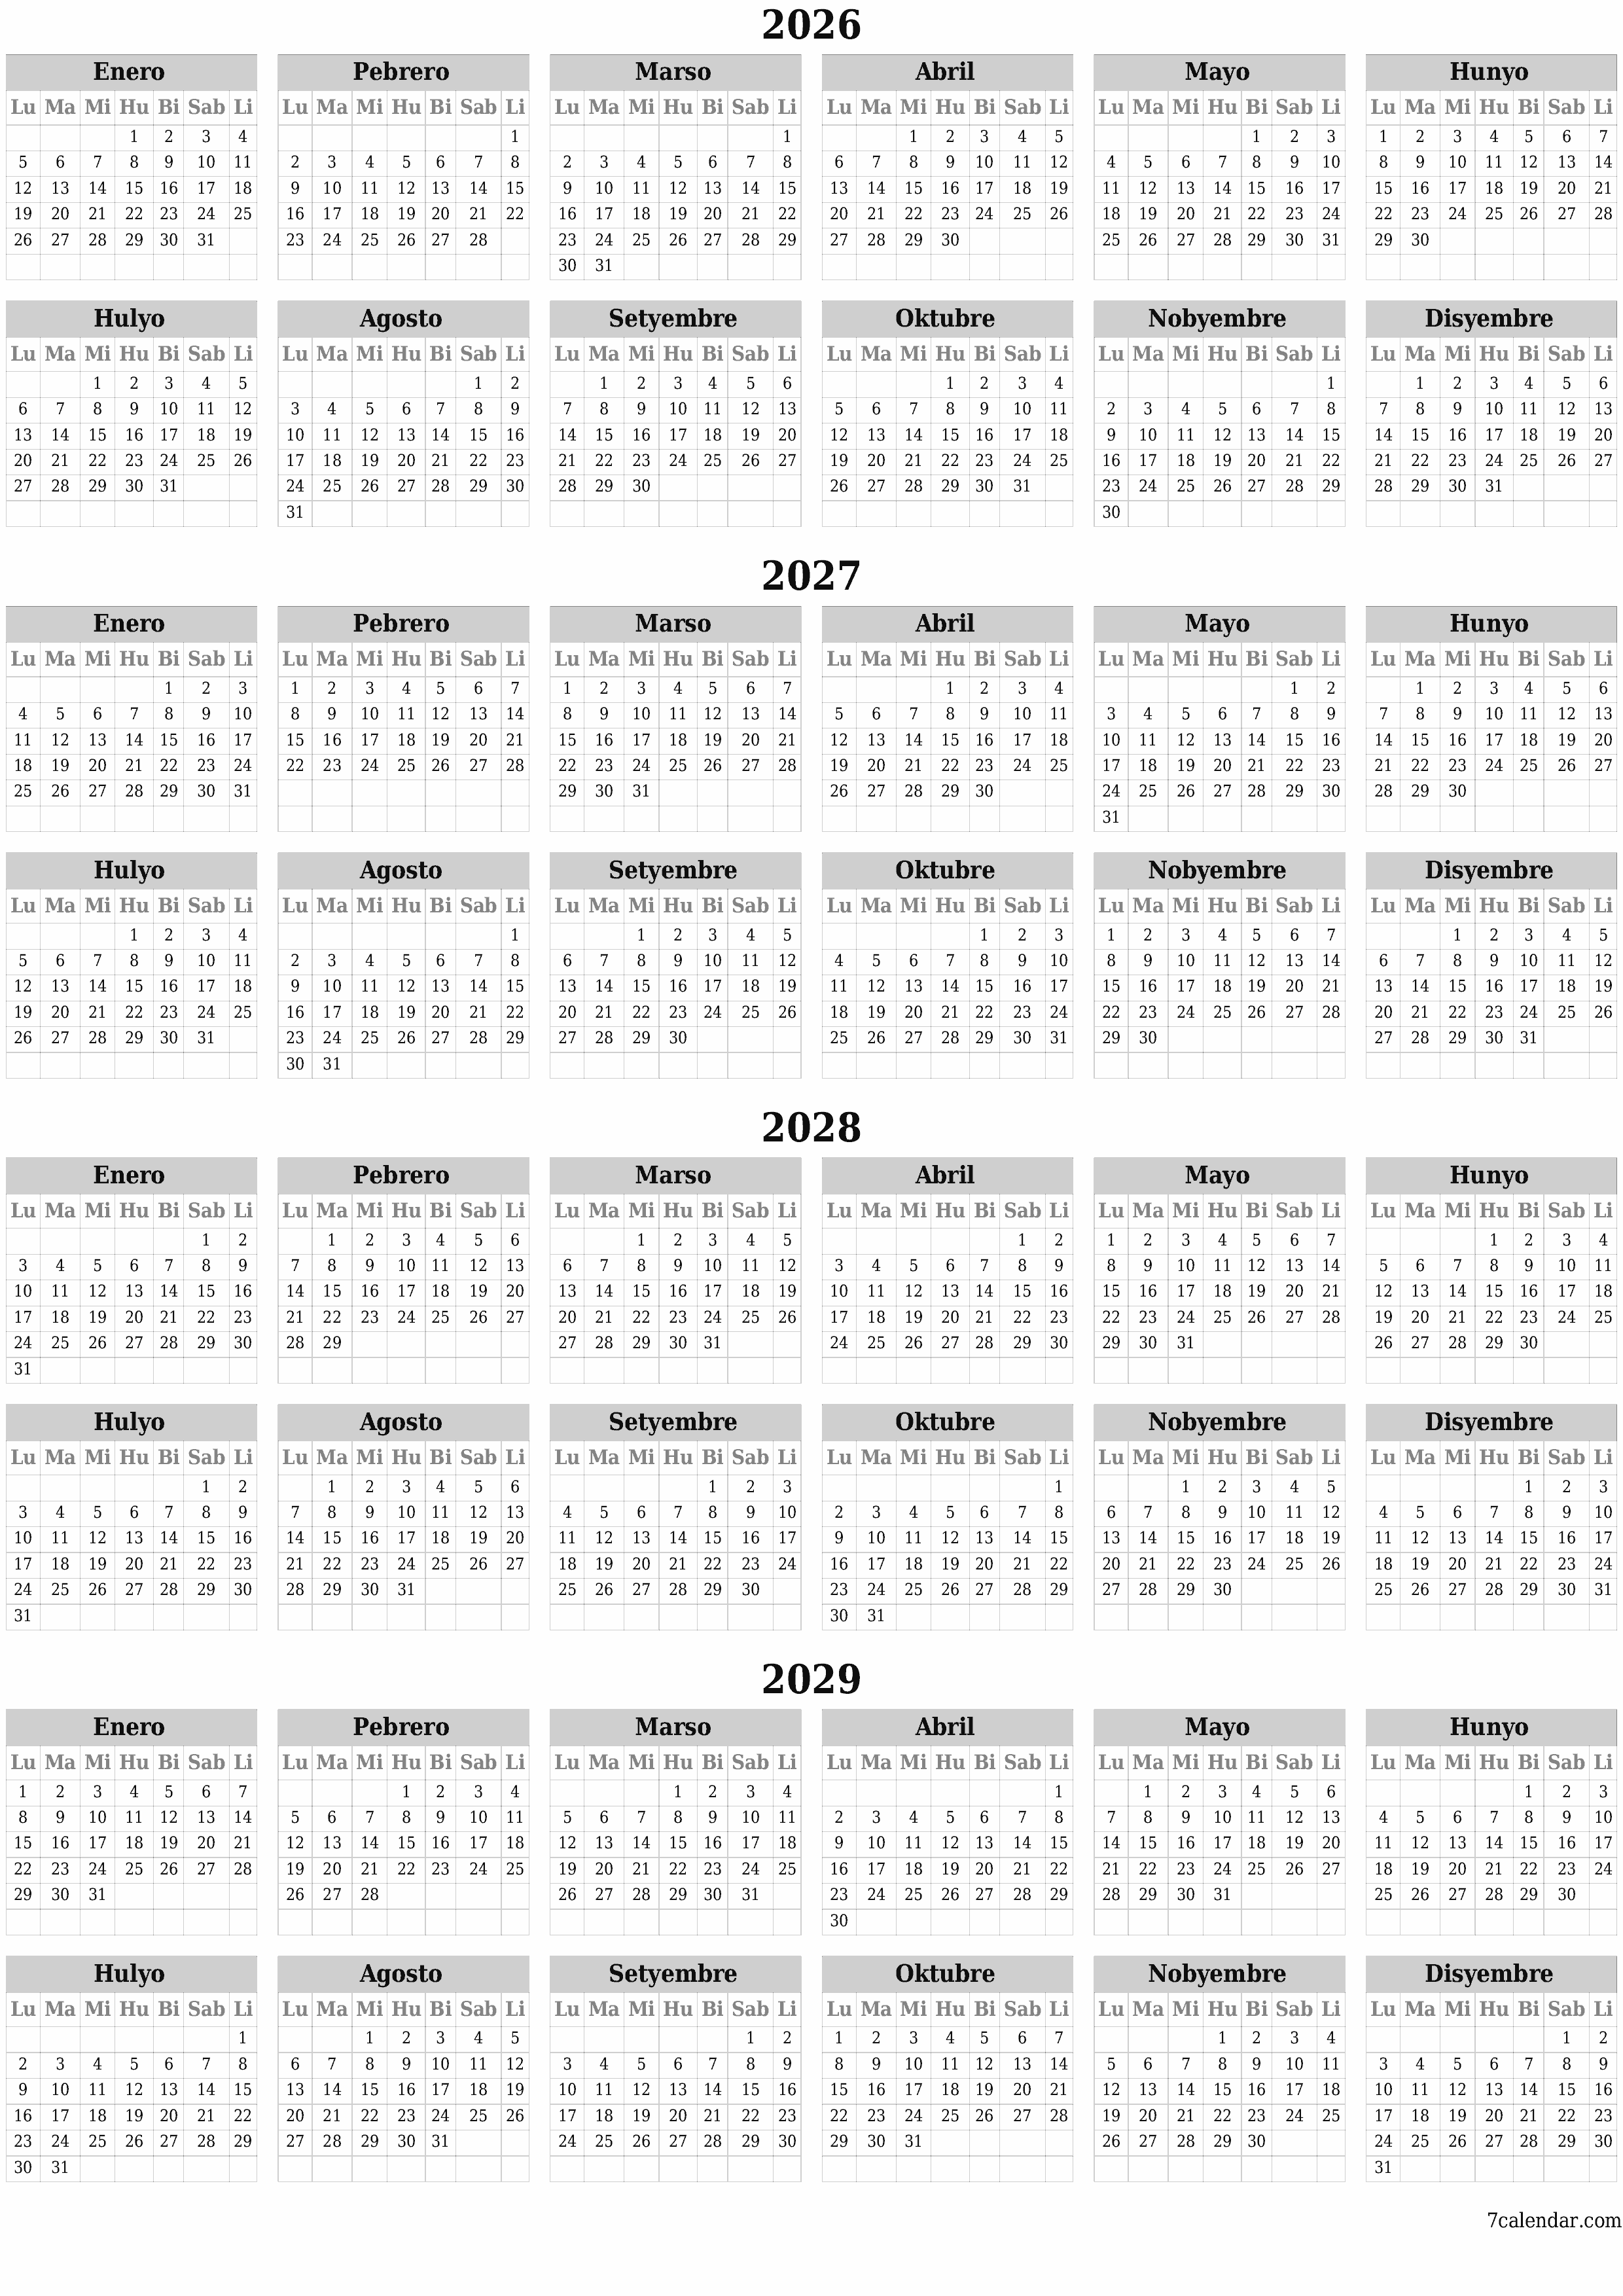 napi-print na sa dingding template ng libreng patayo Taunan kalendaryo Hunyo (Hun) 2026